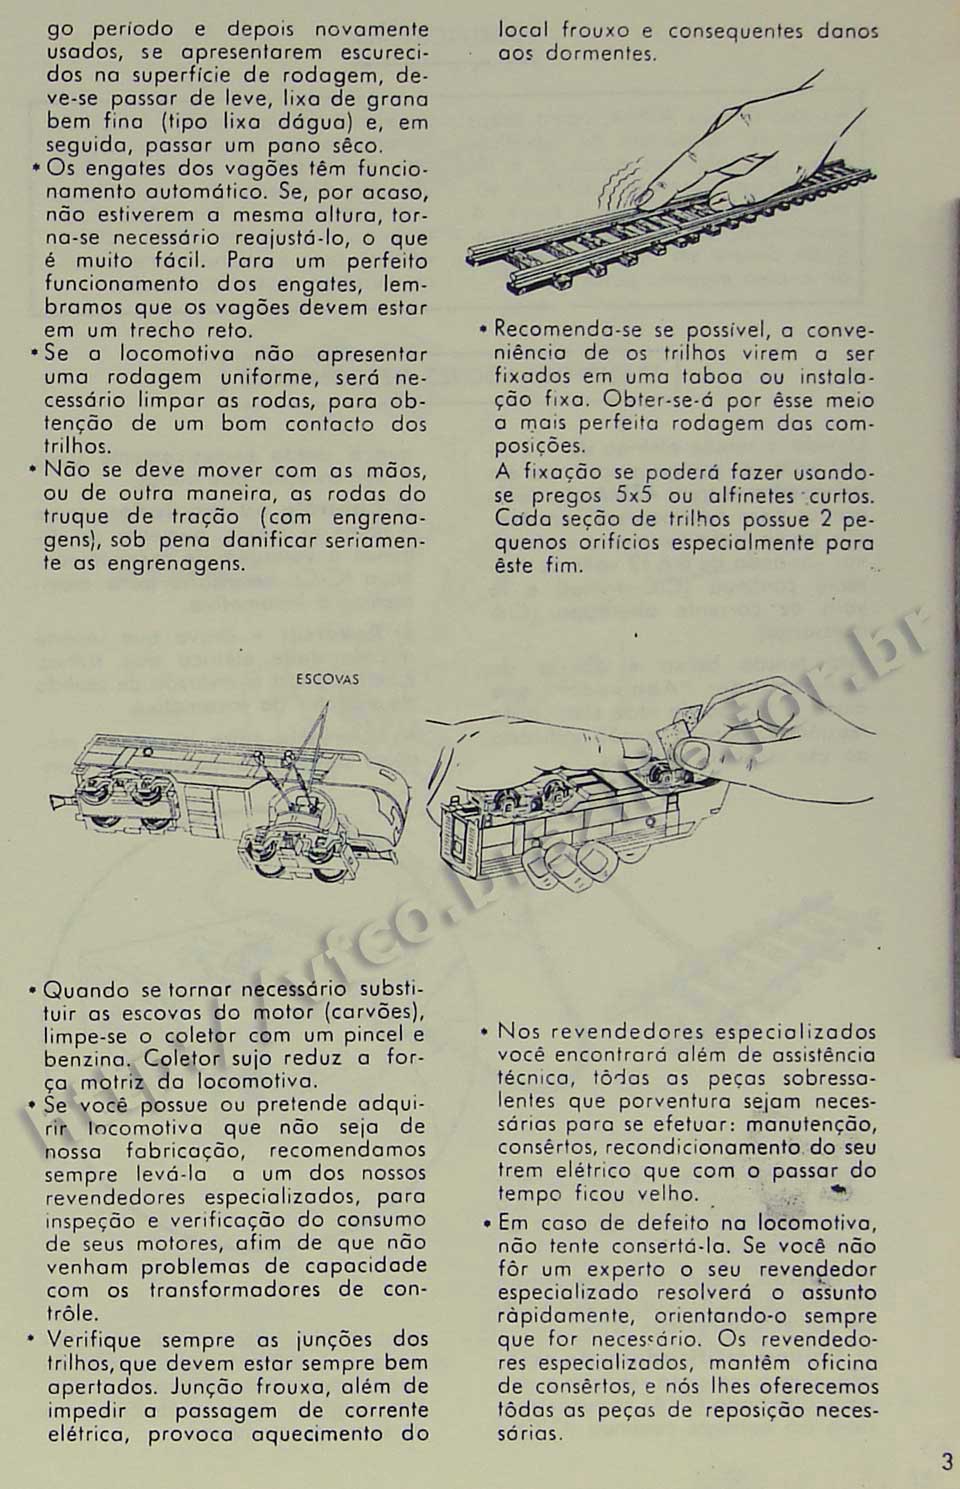 Solução de problemas comuns com locomotivas, trilhos e engates dos vagões, na Página 3 do manual "Como montar e operar seu trem elétrico Atma" para maquete de ferreomodelismo